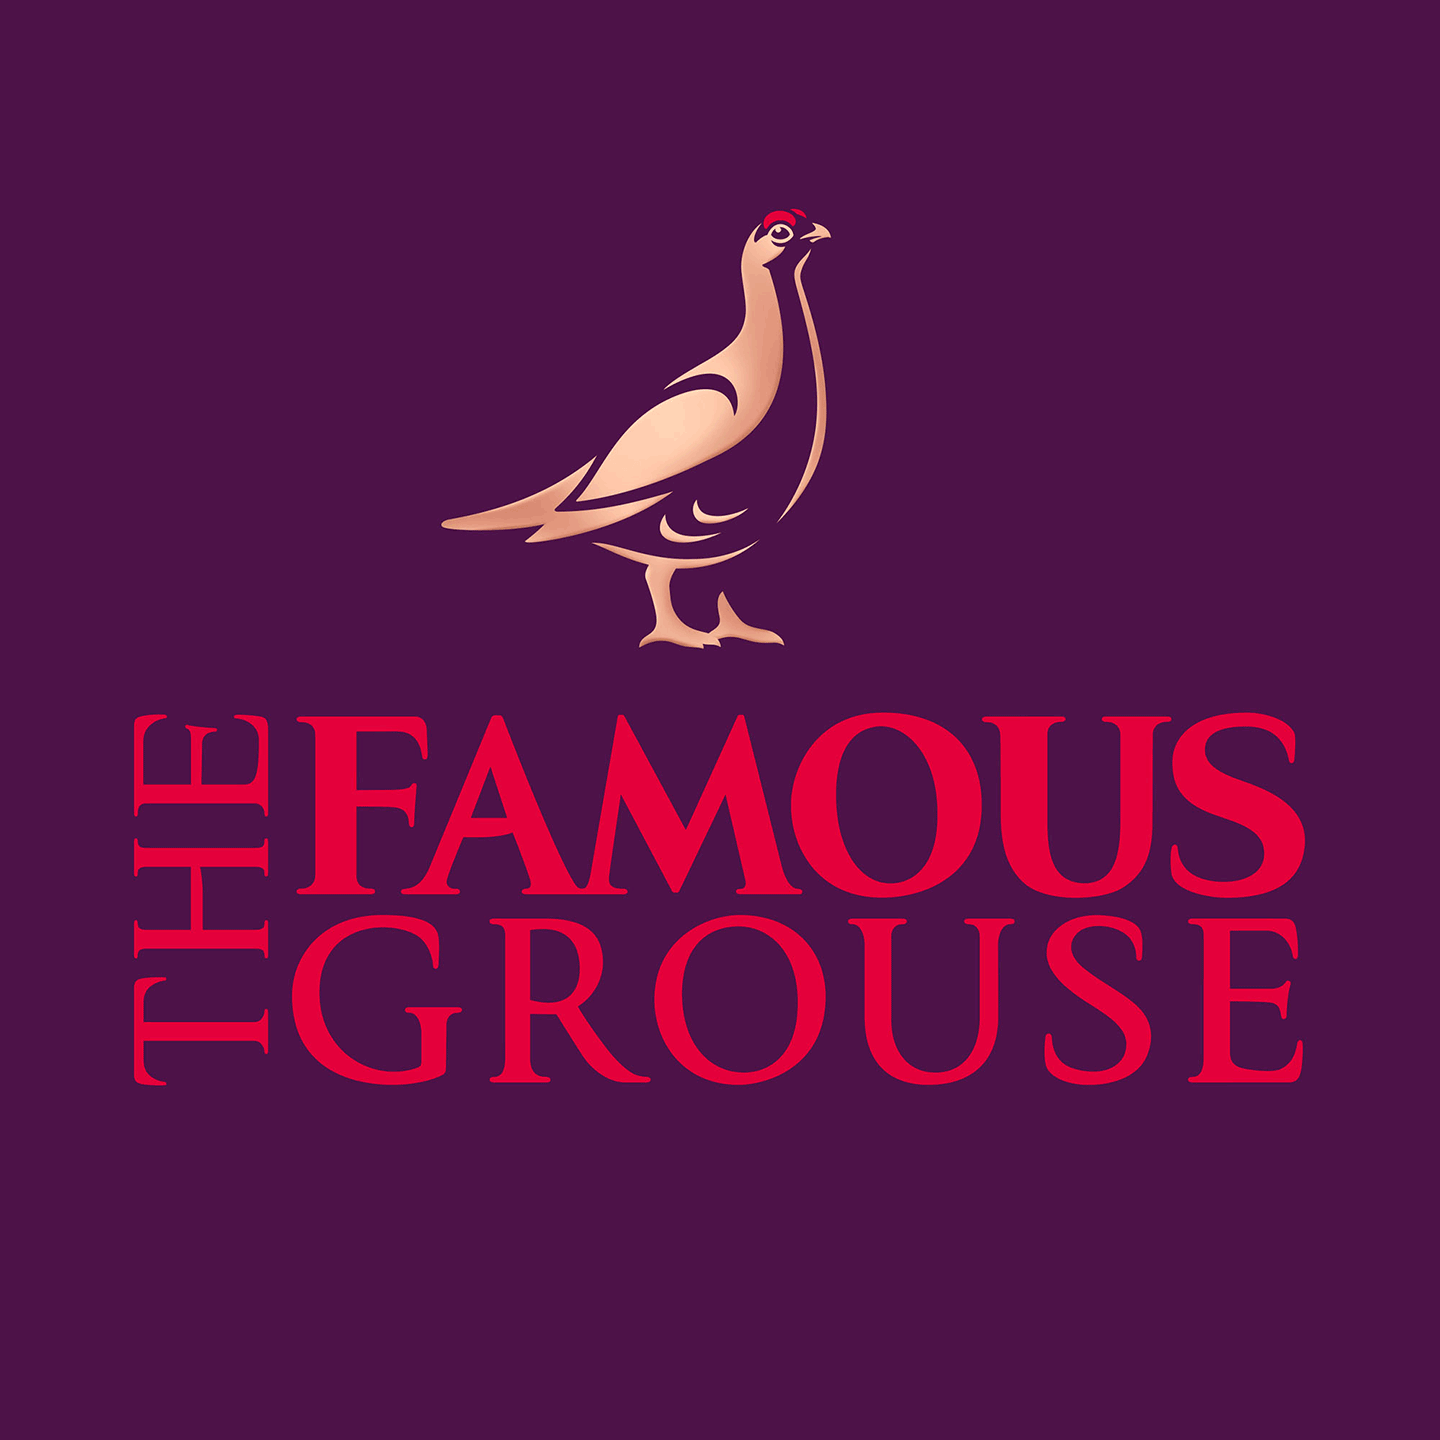 Famous Grouse bespoke typeface